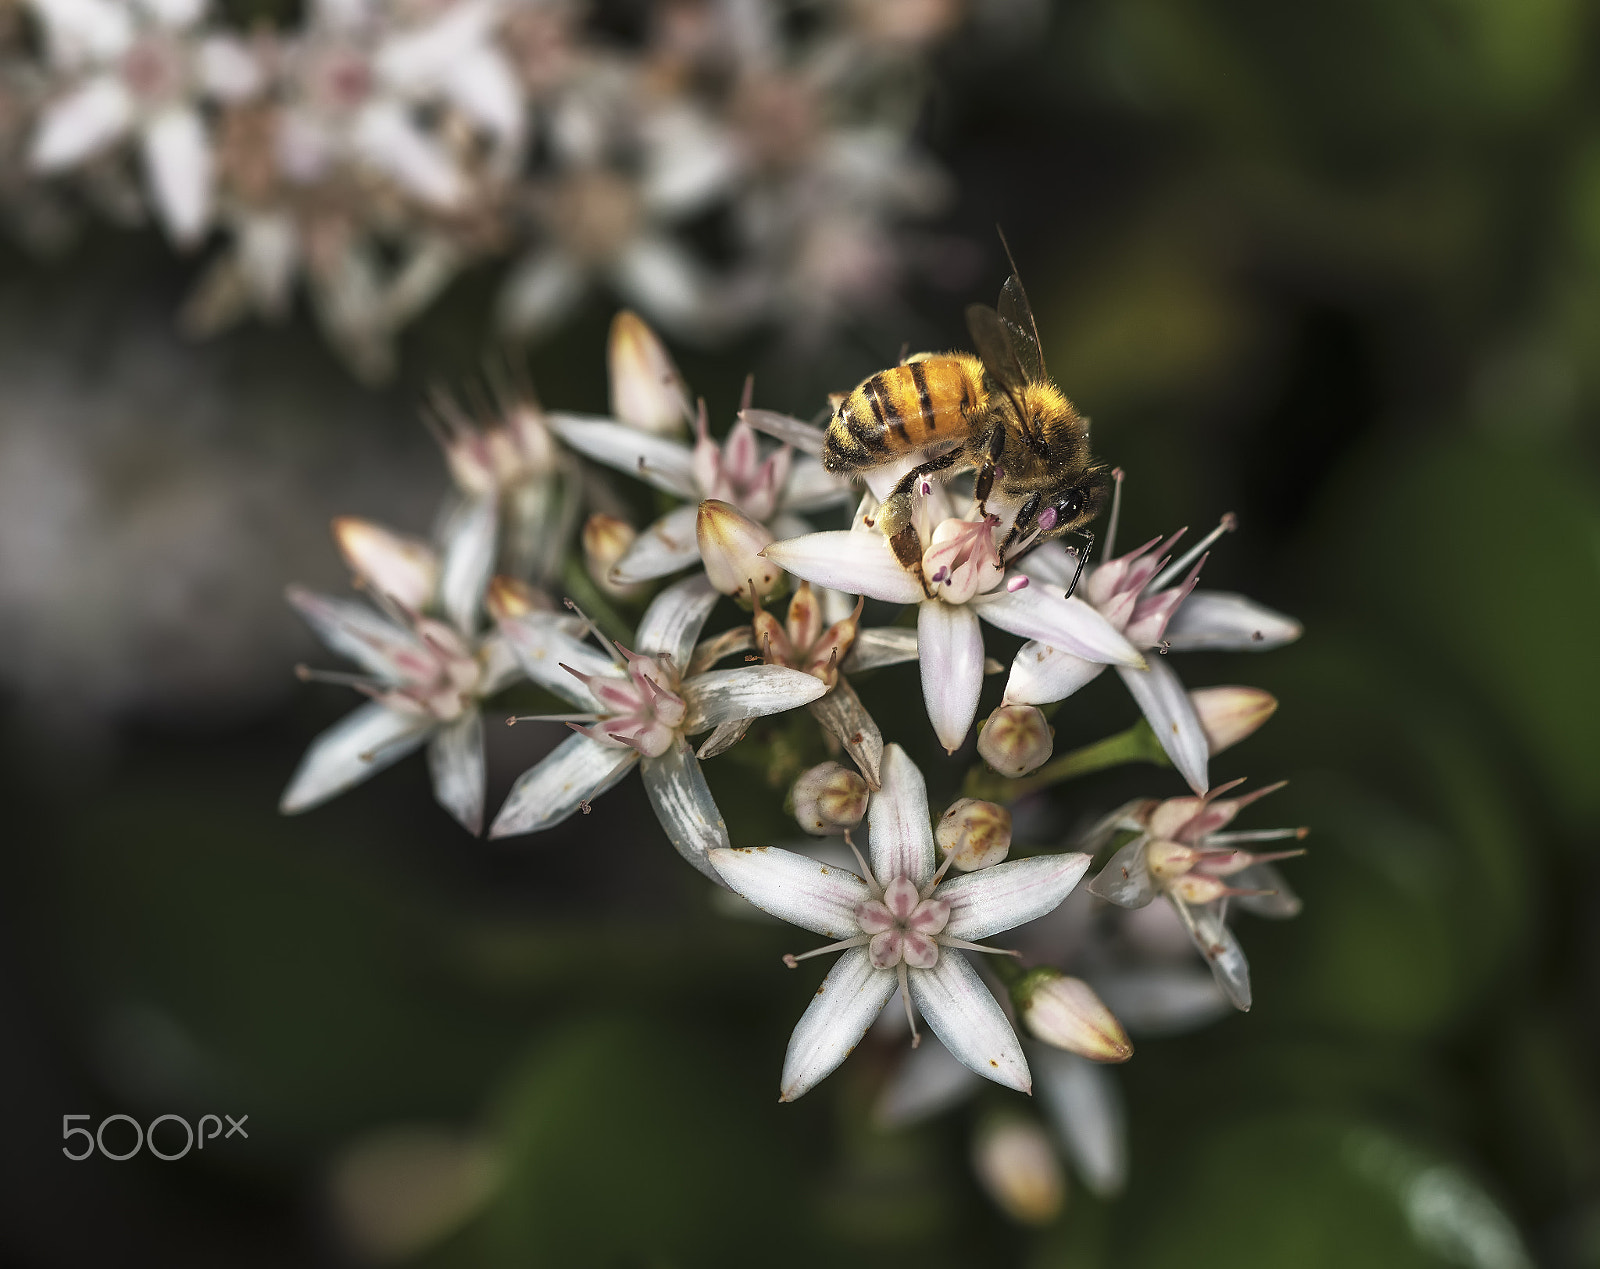 Sony a7R sample photo. Nectar harvest bee photography